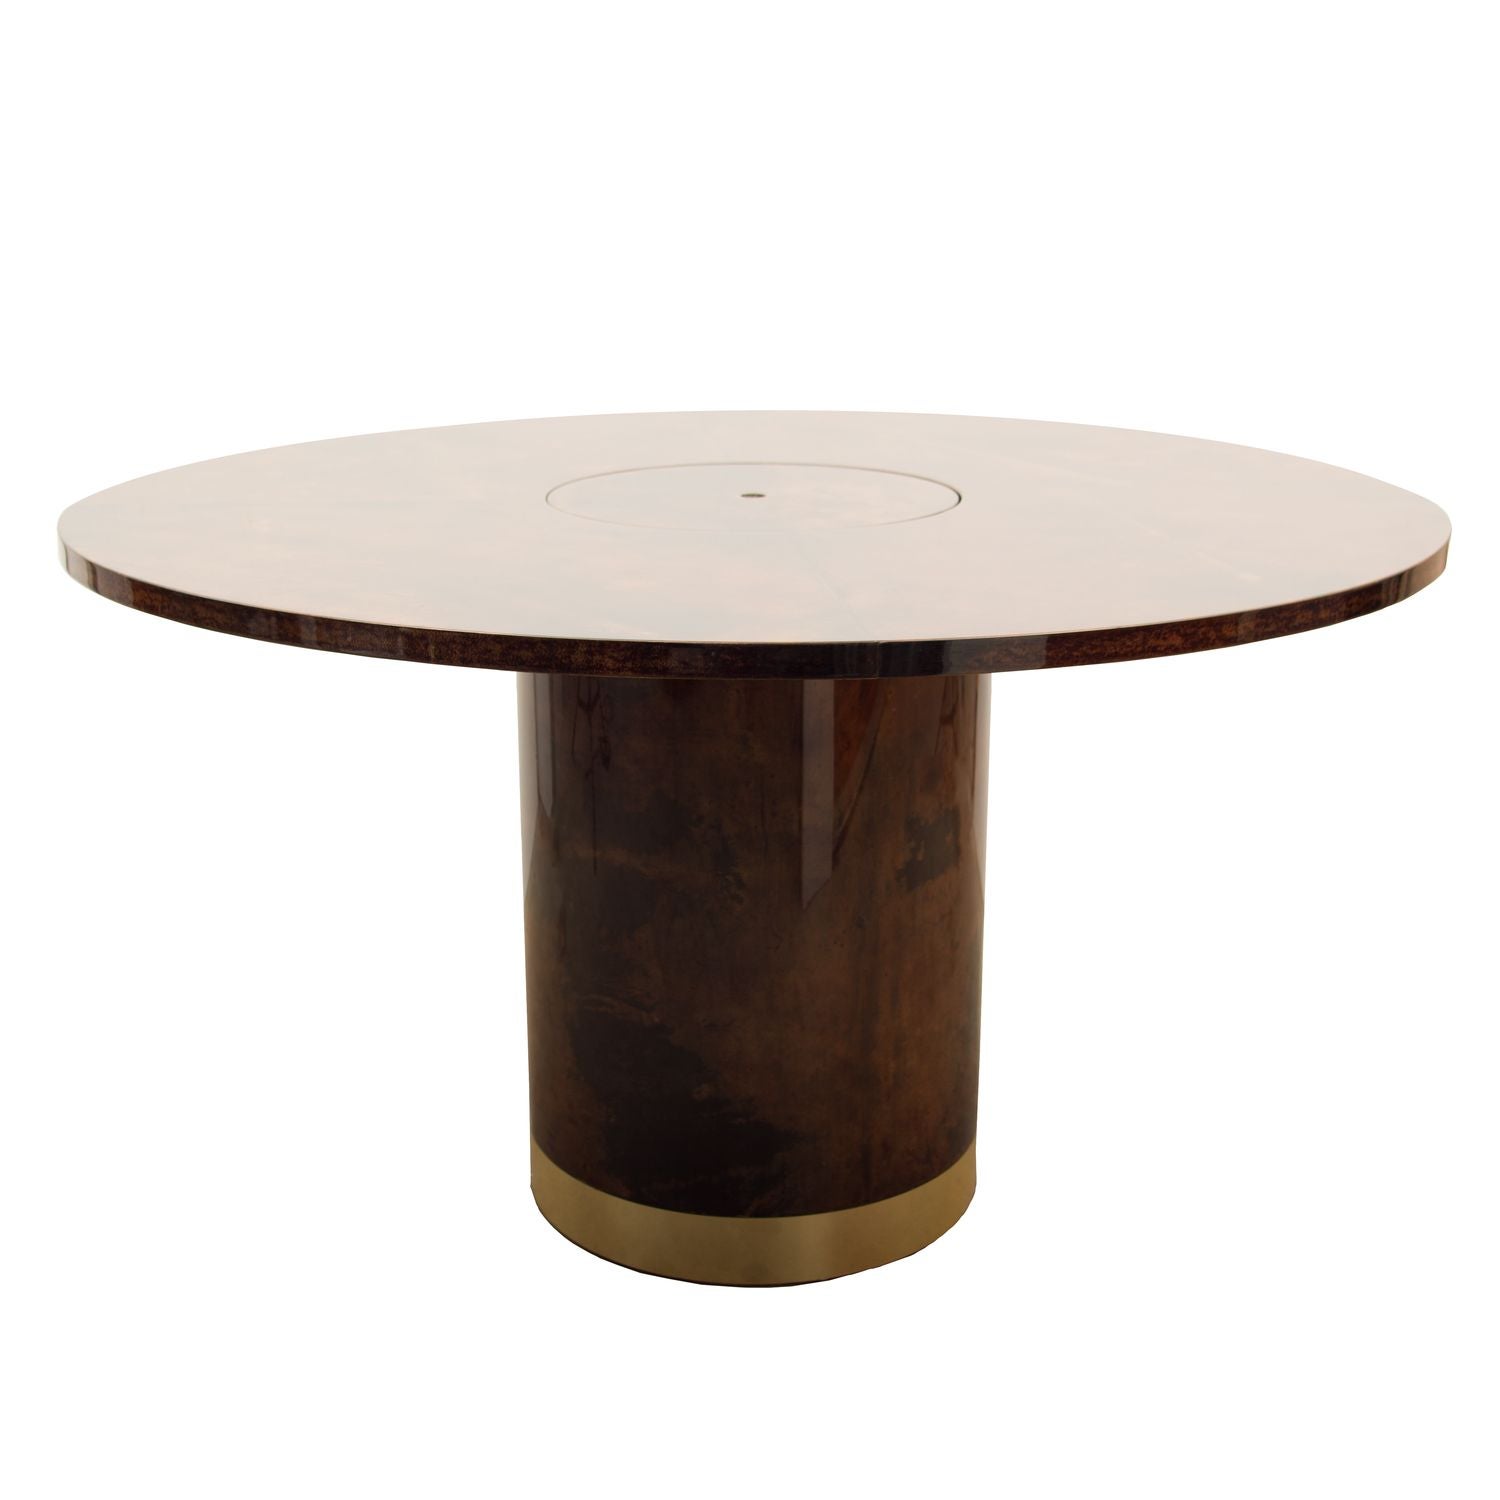 Aldo Tura Pedestal Table